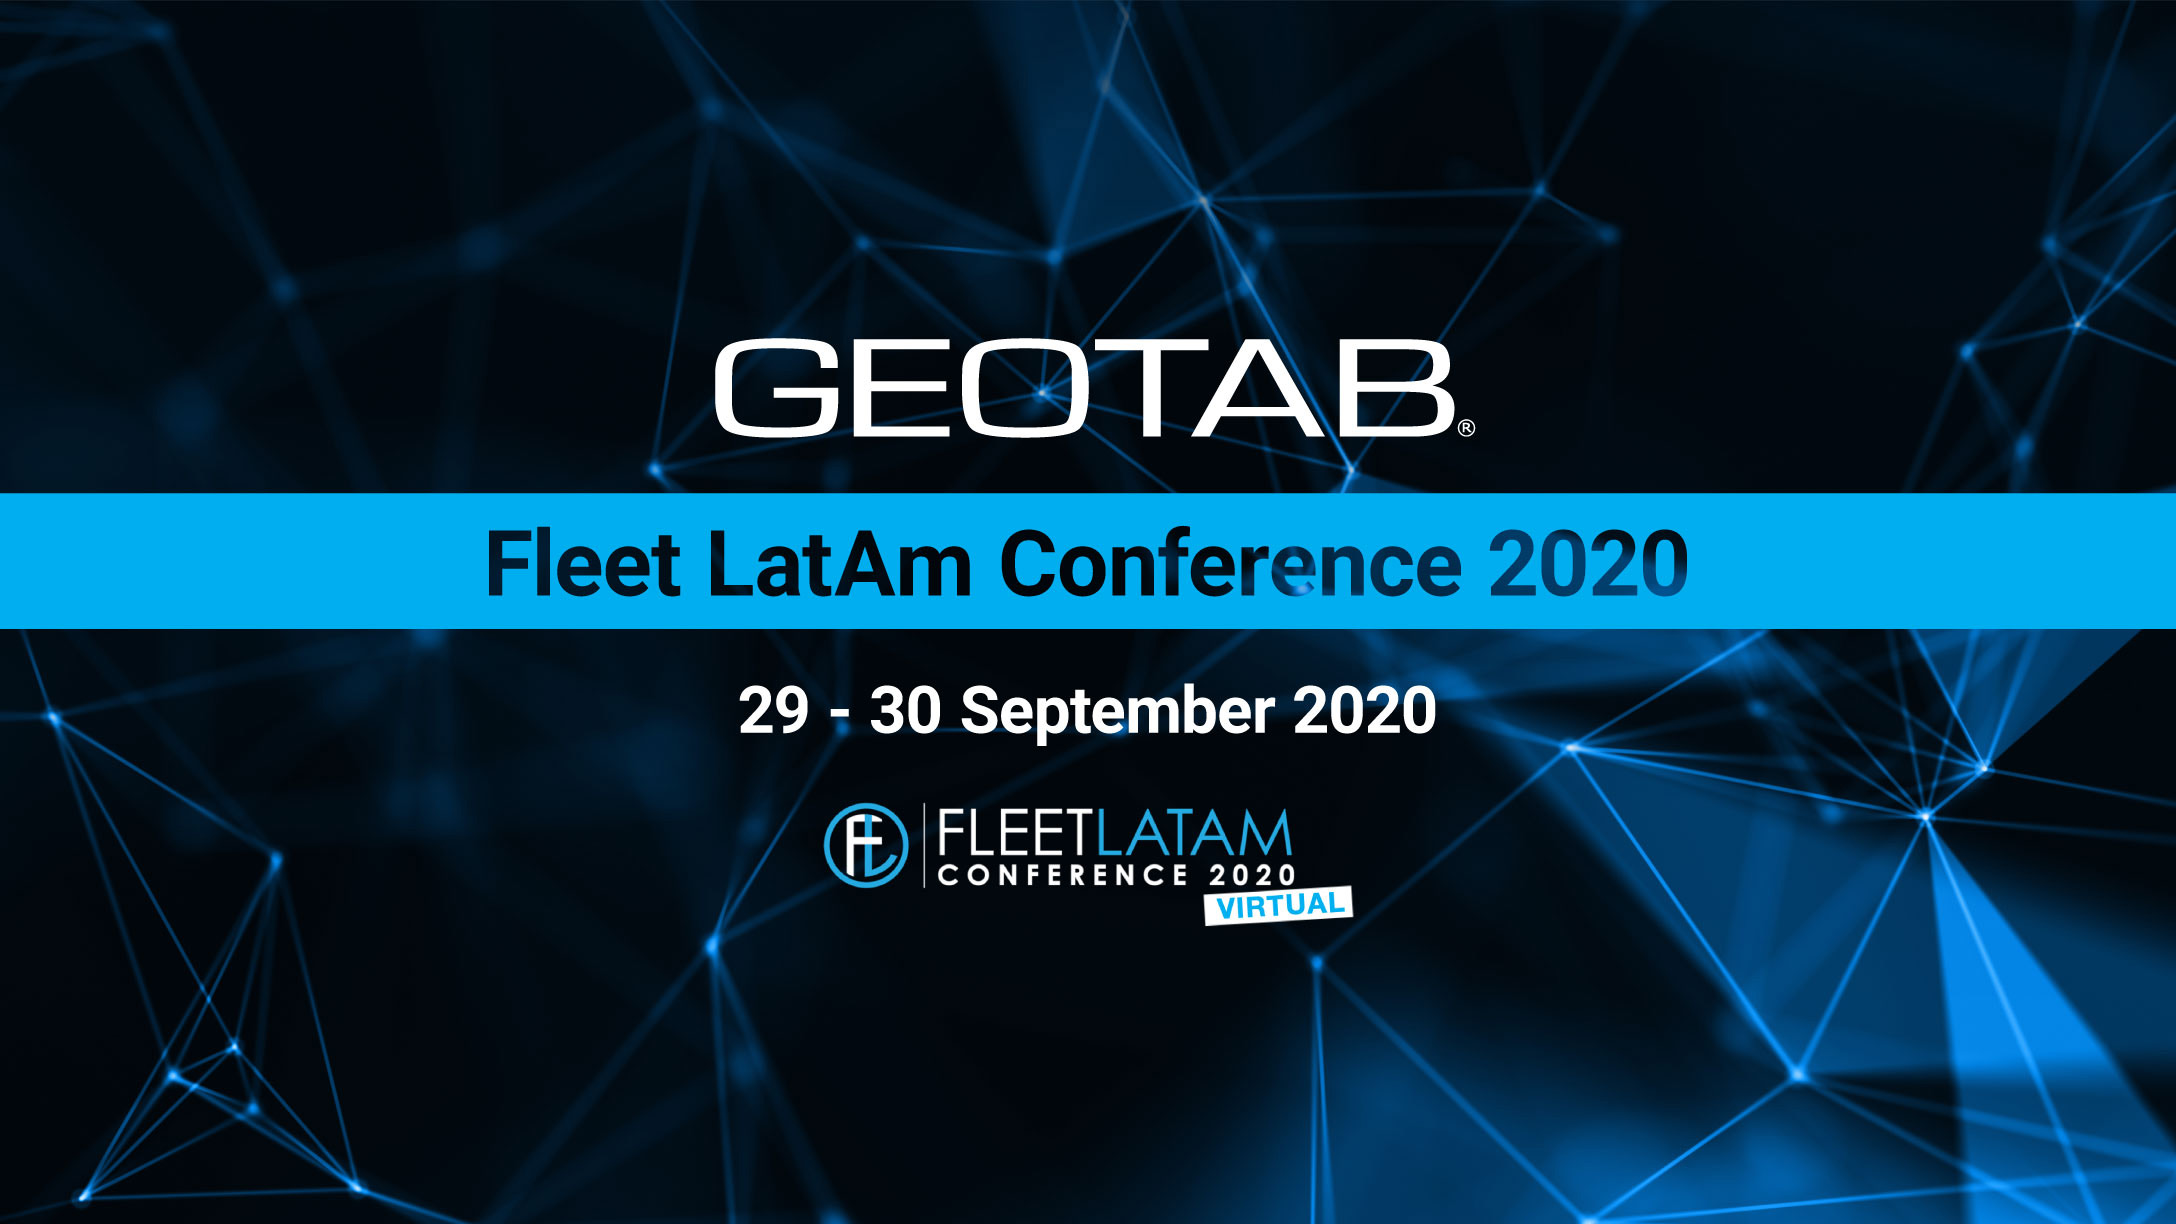 Geotab Fleet LatAm 2020 Conference